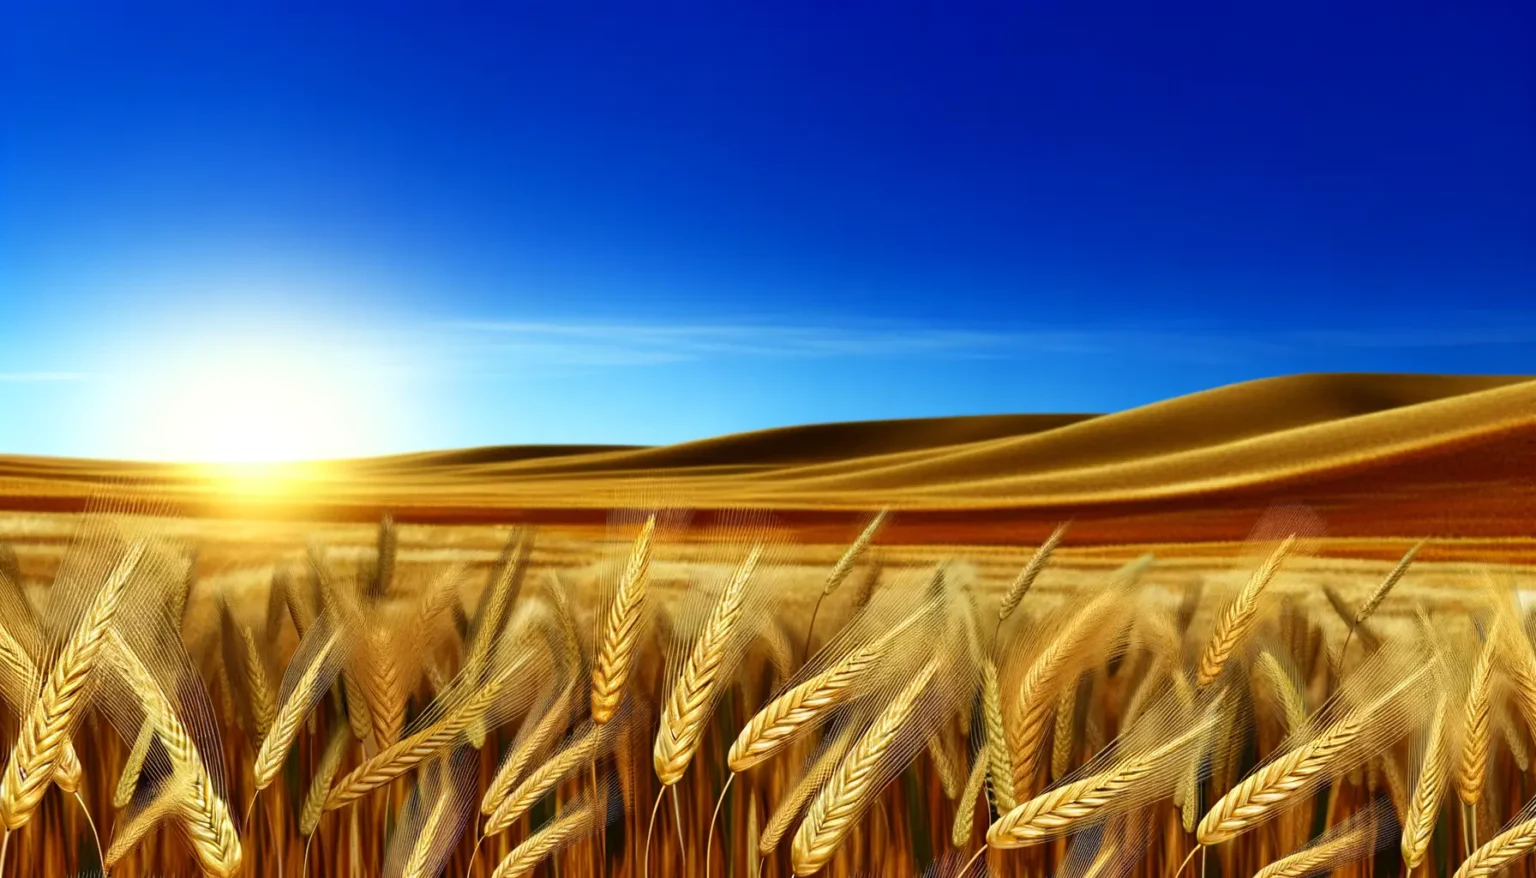 Goldene Weizenfelder im Vordergrund mit fokussierten Ähren, sich erstreckend bis zu sanften Hügeln im Hintergrund unter einem strahlend blauen Himmel mit einem leuchtenden Sonnenuntergang am Horizont.